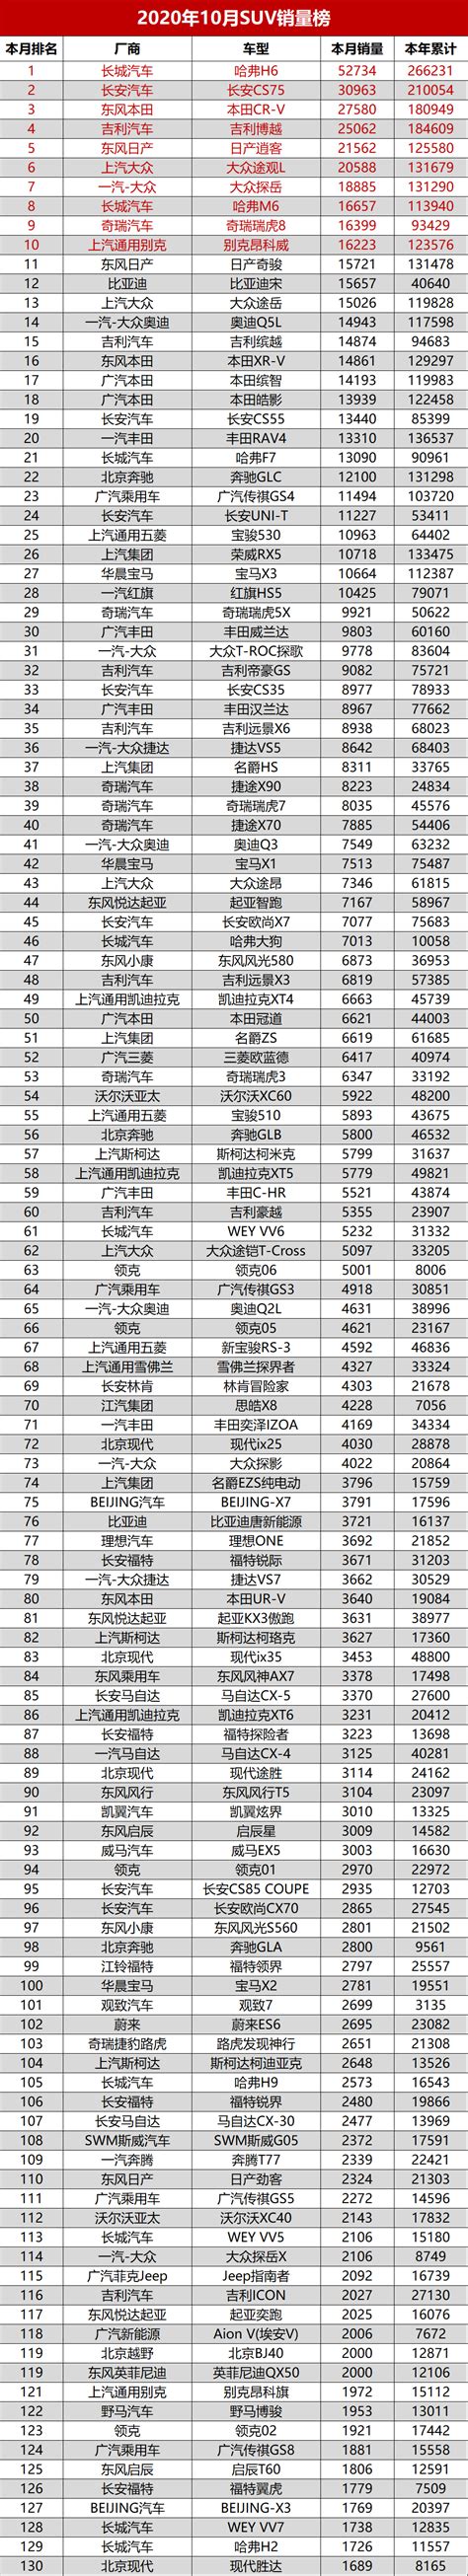 2020中国 销量排行_2020一季度中国轿车车型销量排行榜 TOP15_中国排行网